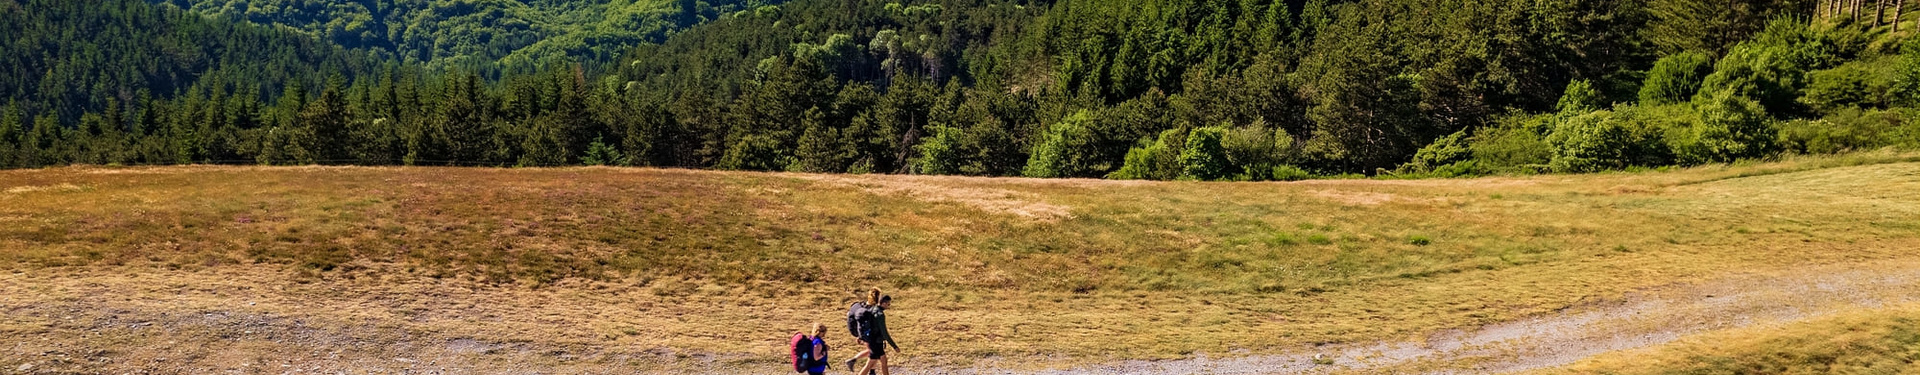 Formulaire de réservation - Le Chemin de Compostelle en rando liberté : Du Puy-en-Velay à Aumont Aubrac | Nature Occitane